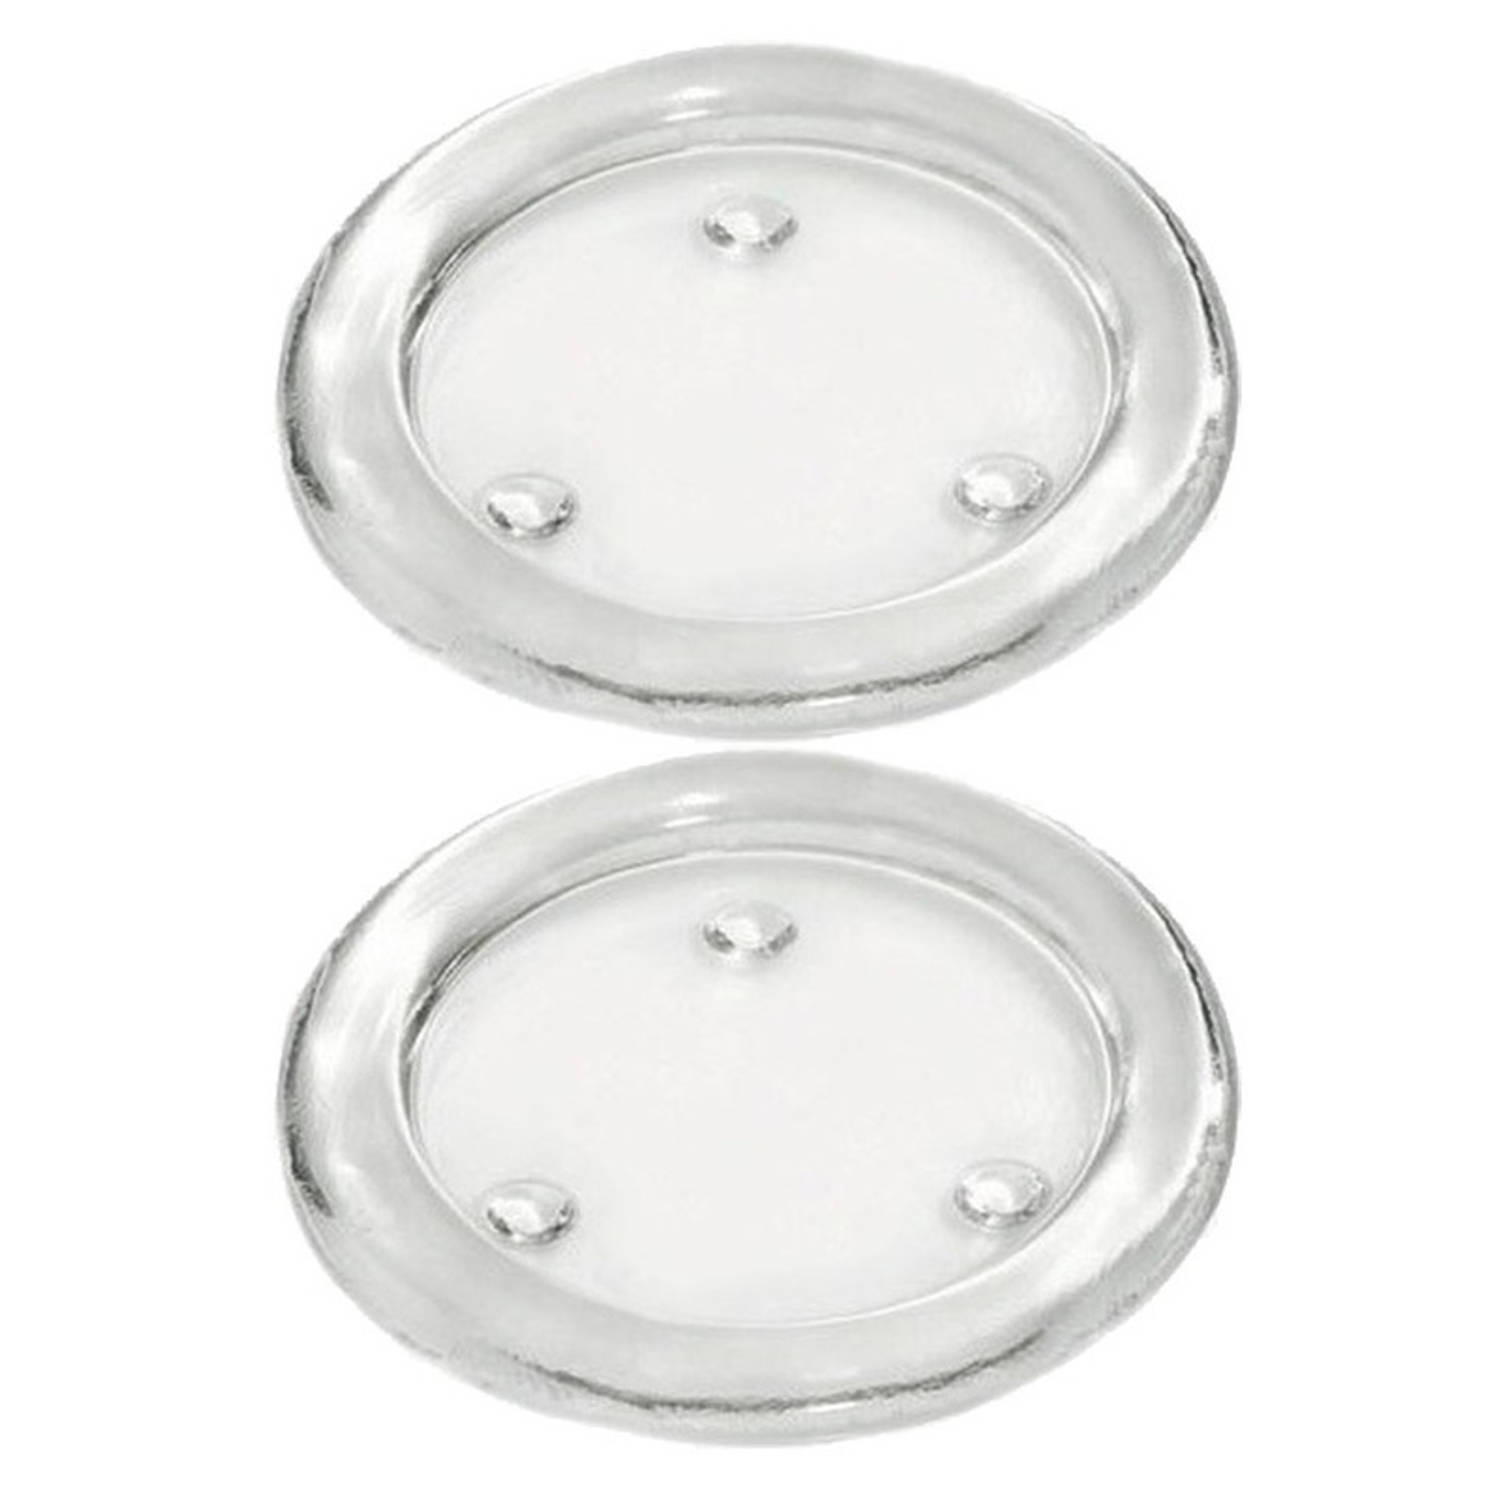 2x Glazen kaarsenhouders voor stompkaarsen van 8 cm doorsnede Waxinelichtjeshouders